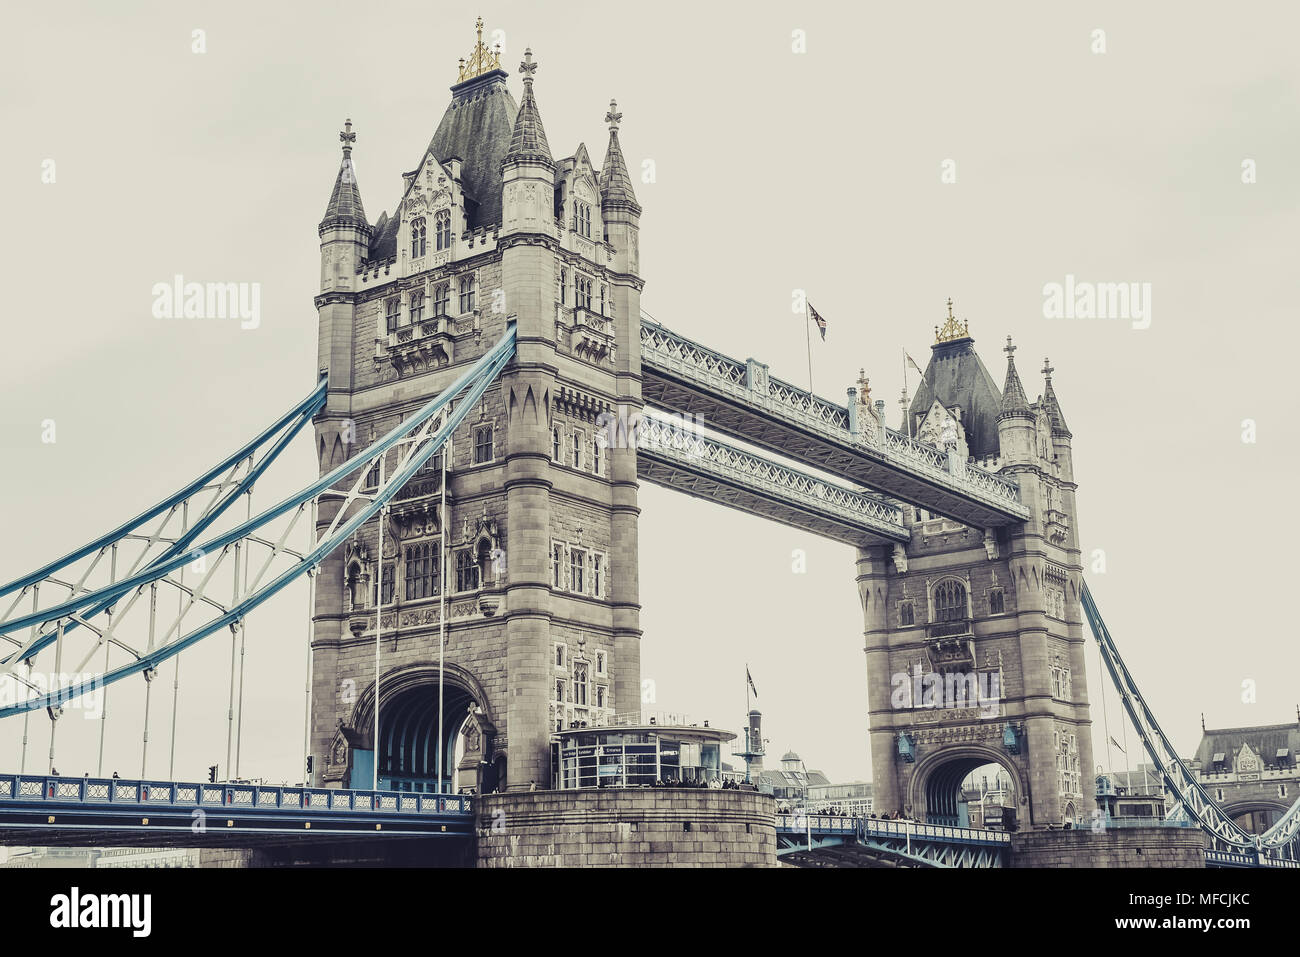 Tower Bridge Londres, vue horizontale. Photo stylisée. Banque D'Images